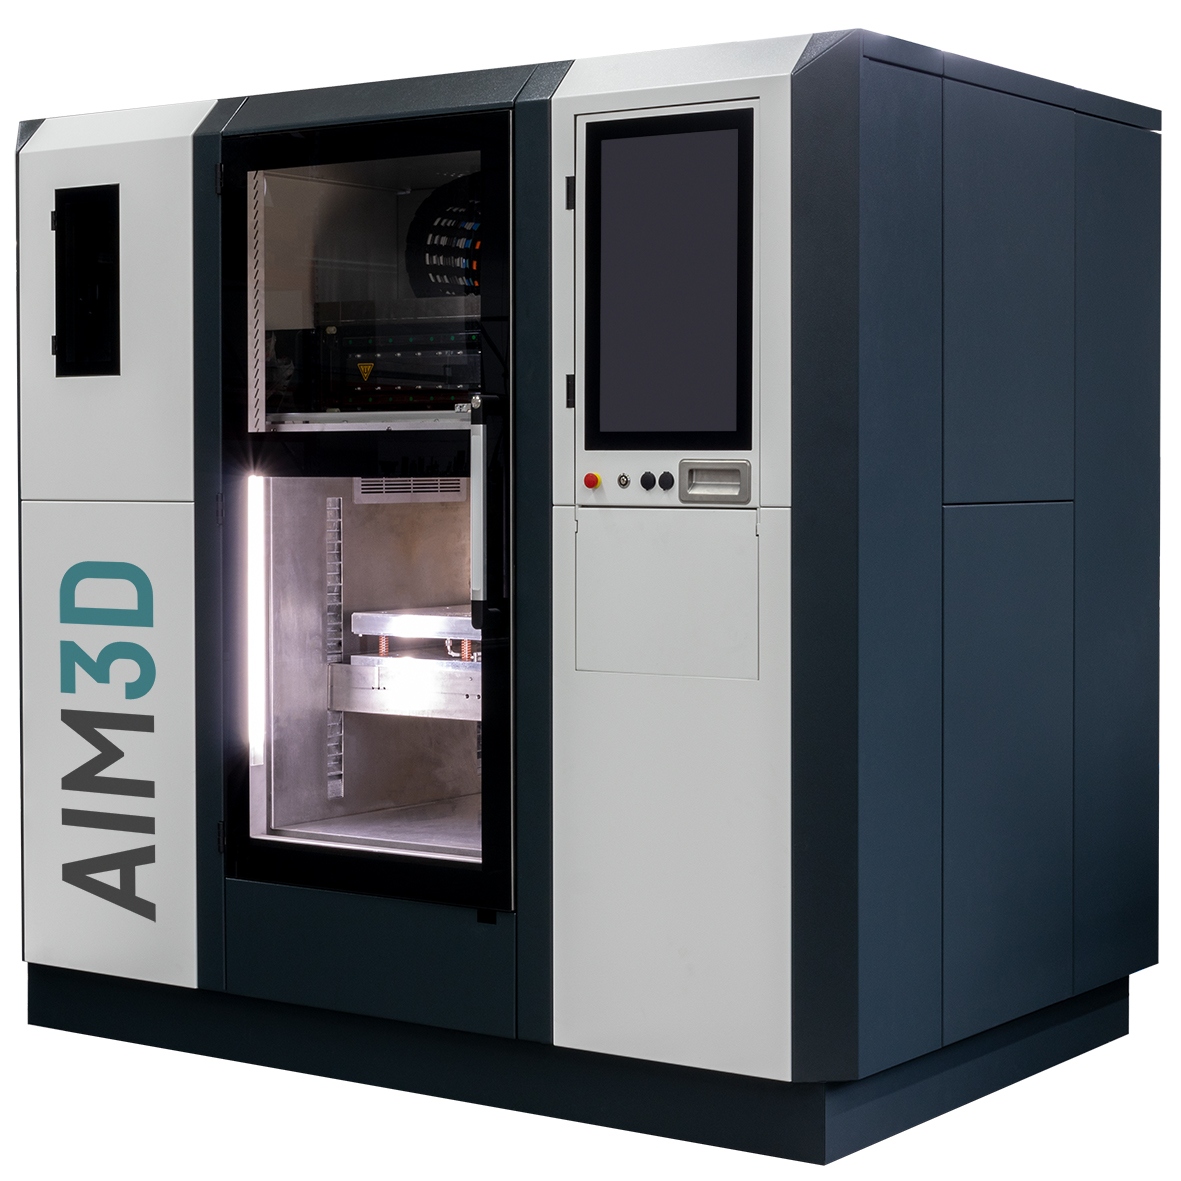 The ExAM 510 3D printer.